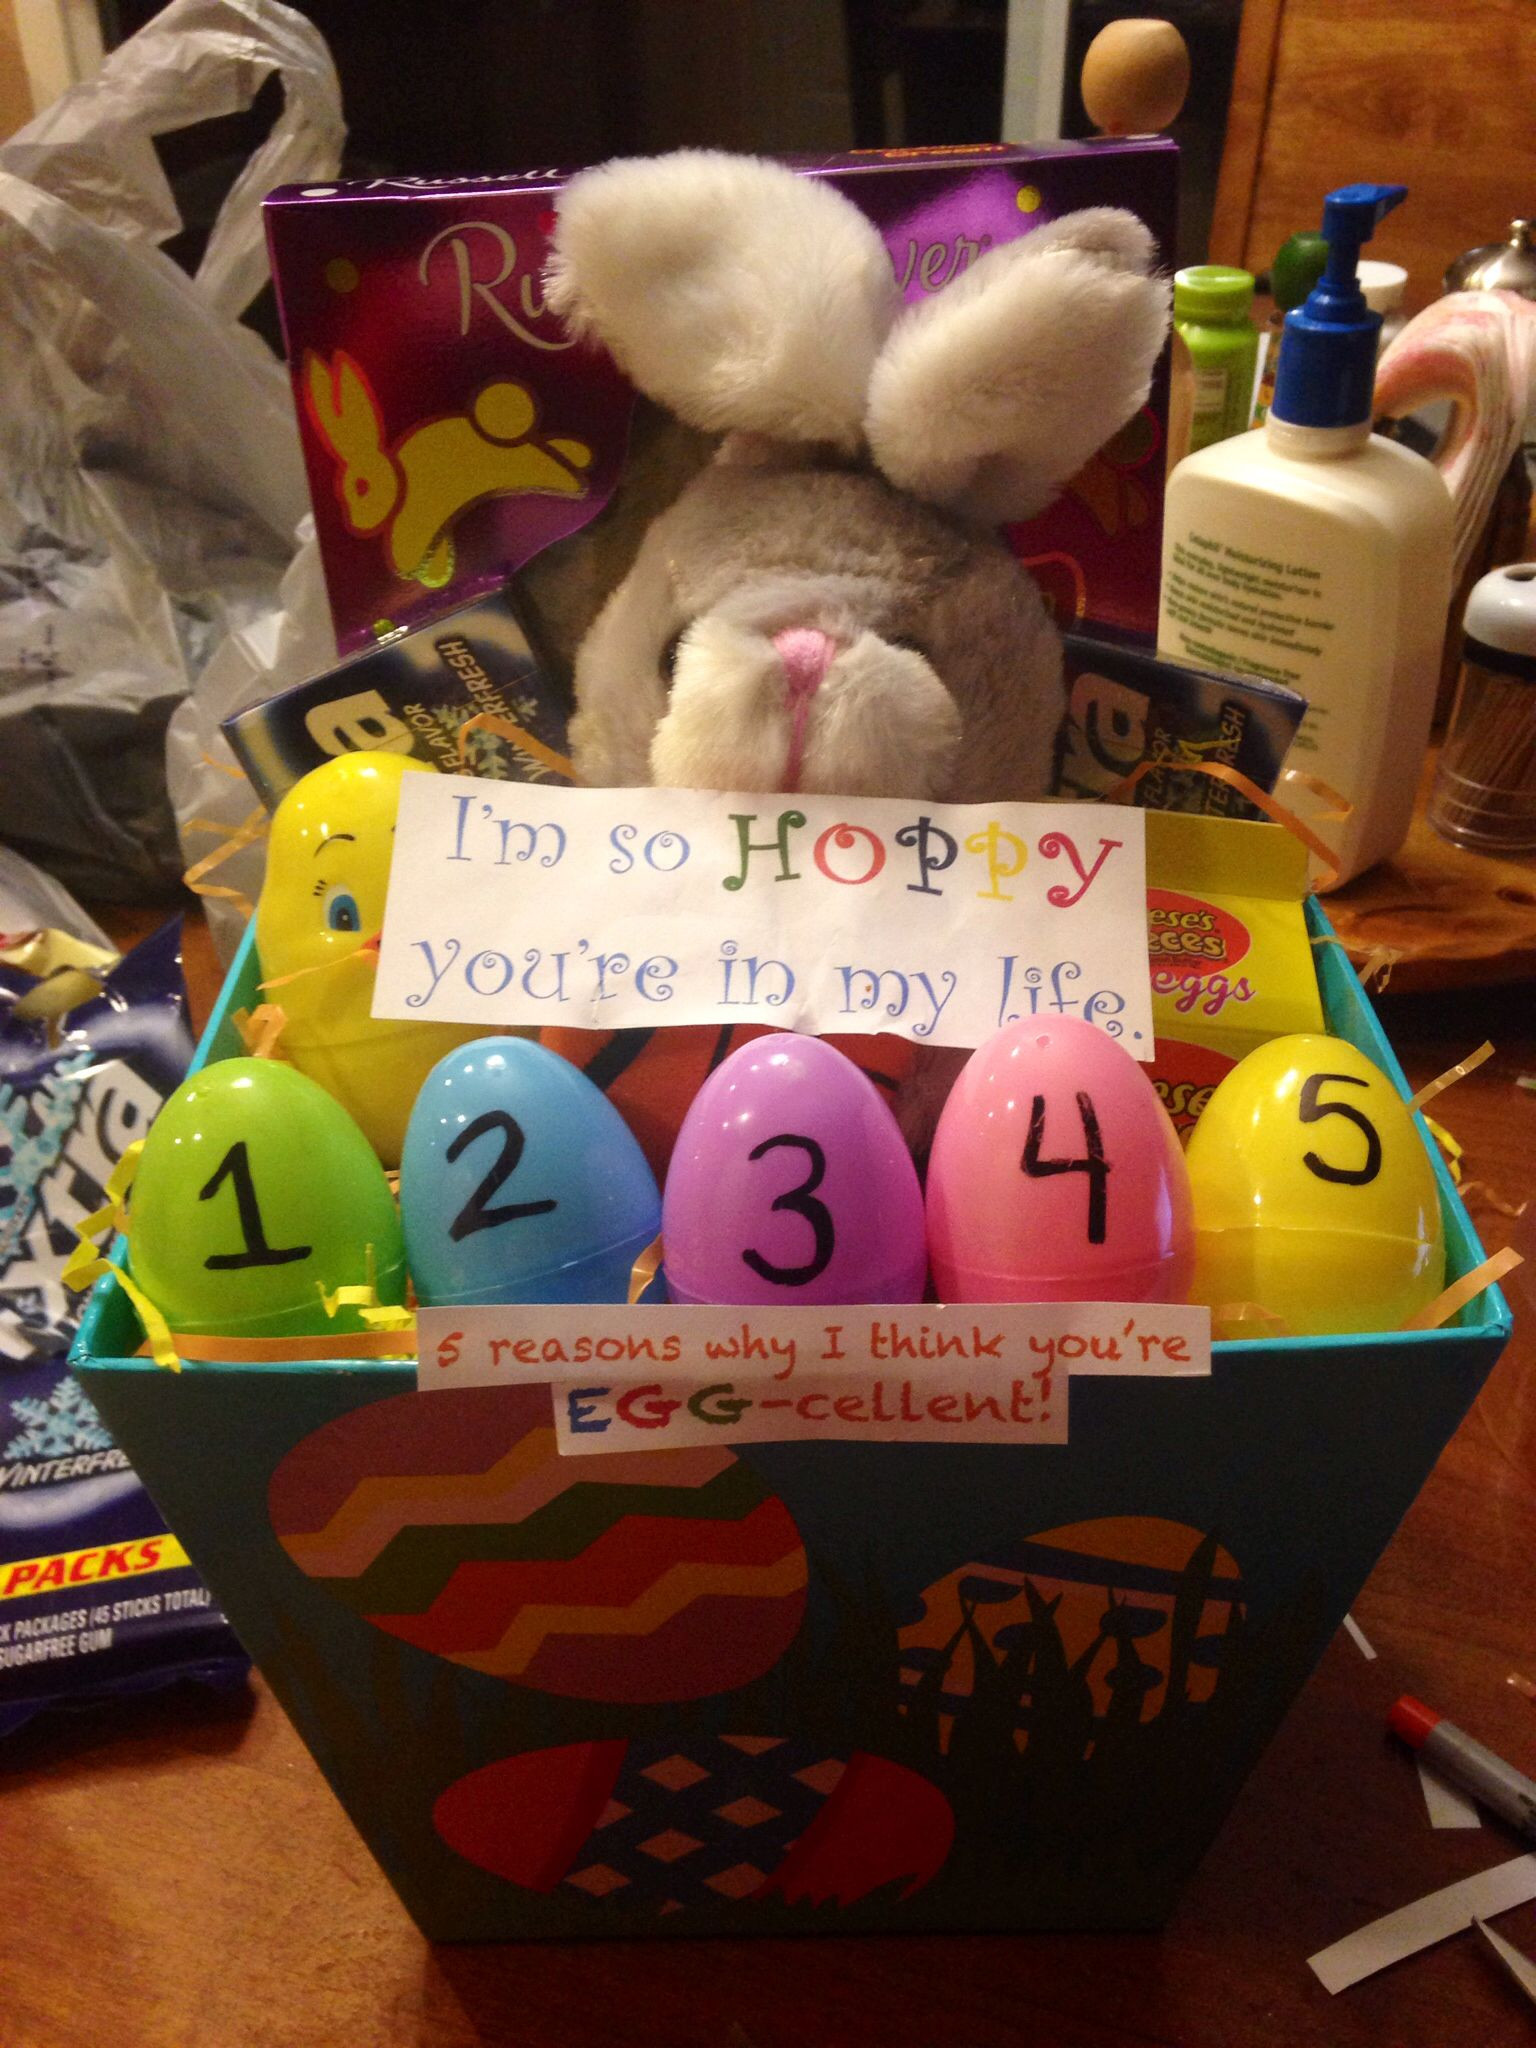 Cute Easter Basket Ideas For Boyfriend
 Easter Basket for girlfriend boyfriend "I m so HOPPY you